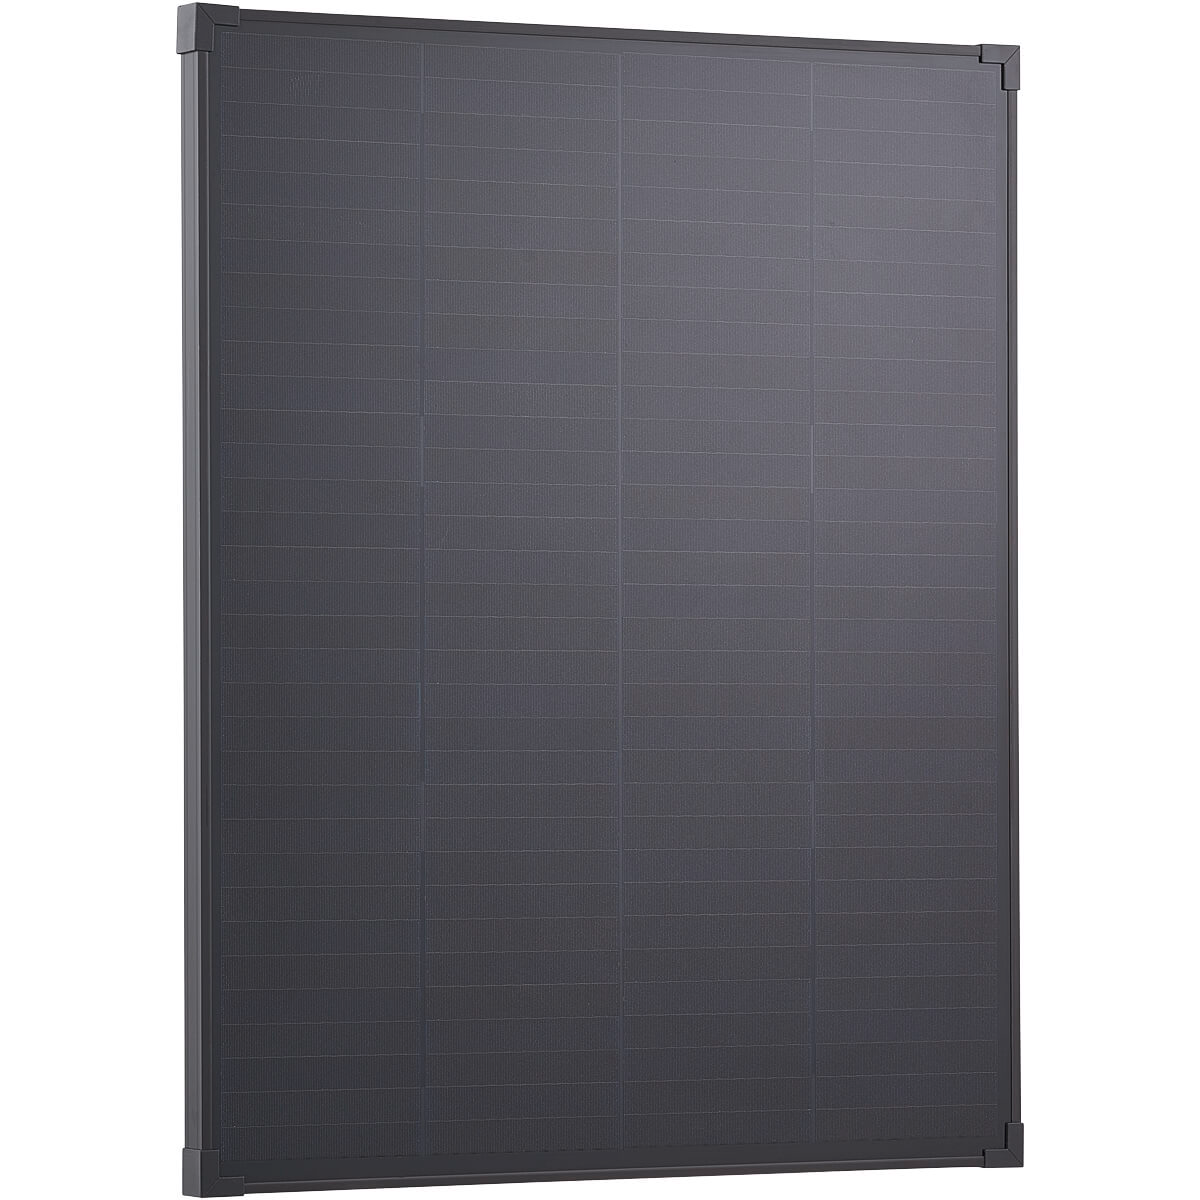 ECTIVE SSP 100C Black Schindel Monokristallines starres Solarmodul kompakt 100 W